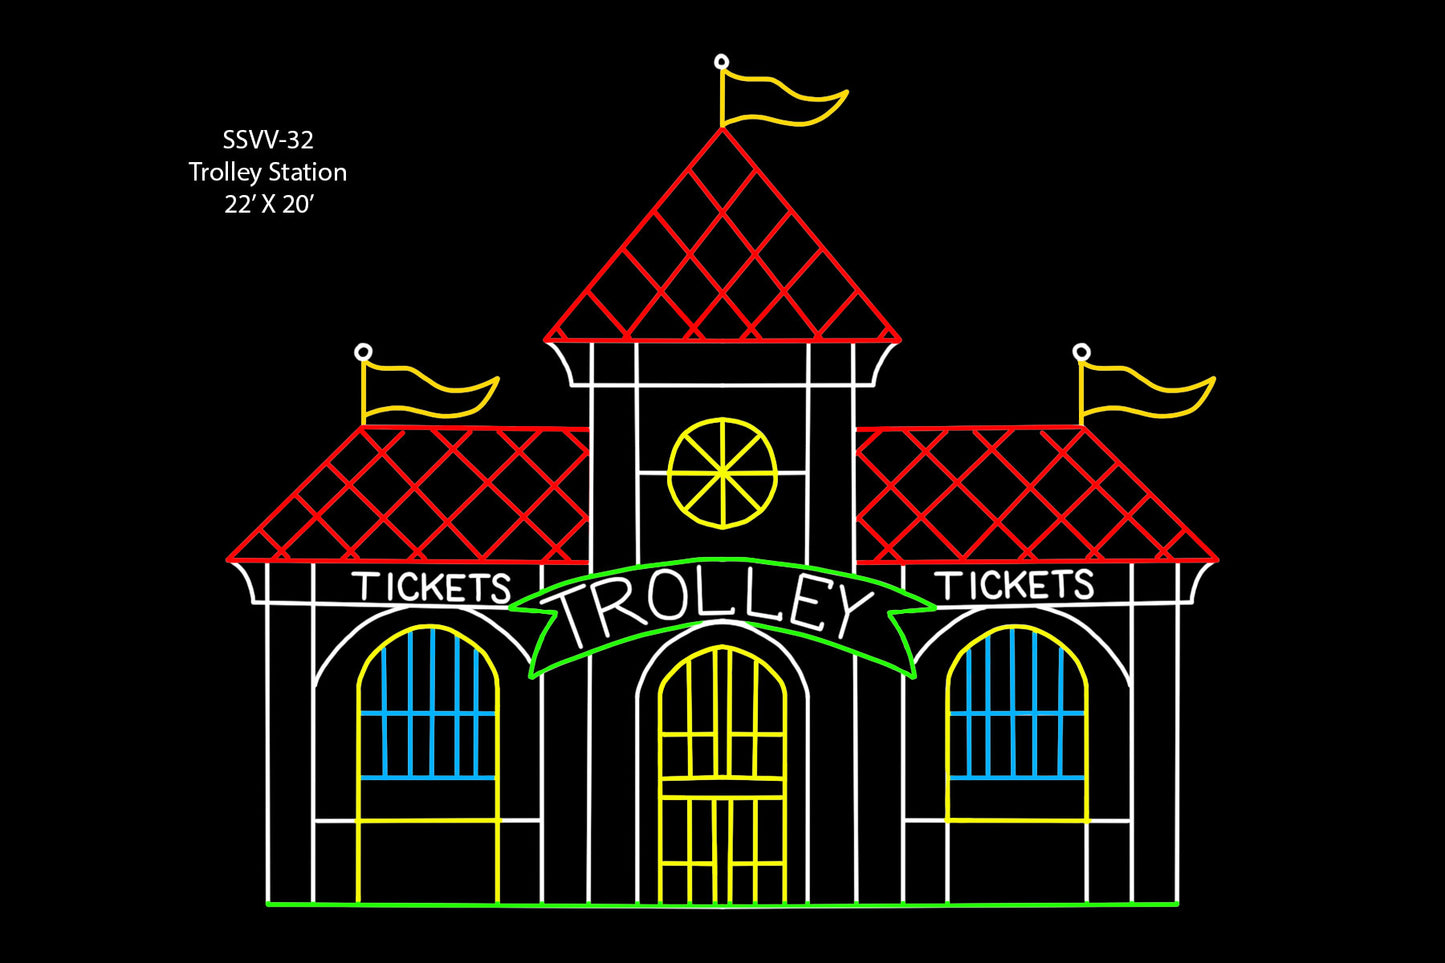 Trolley Station